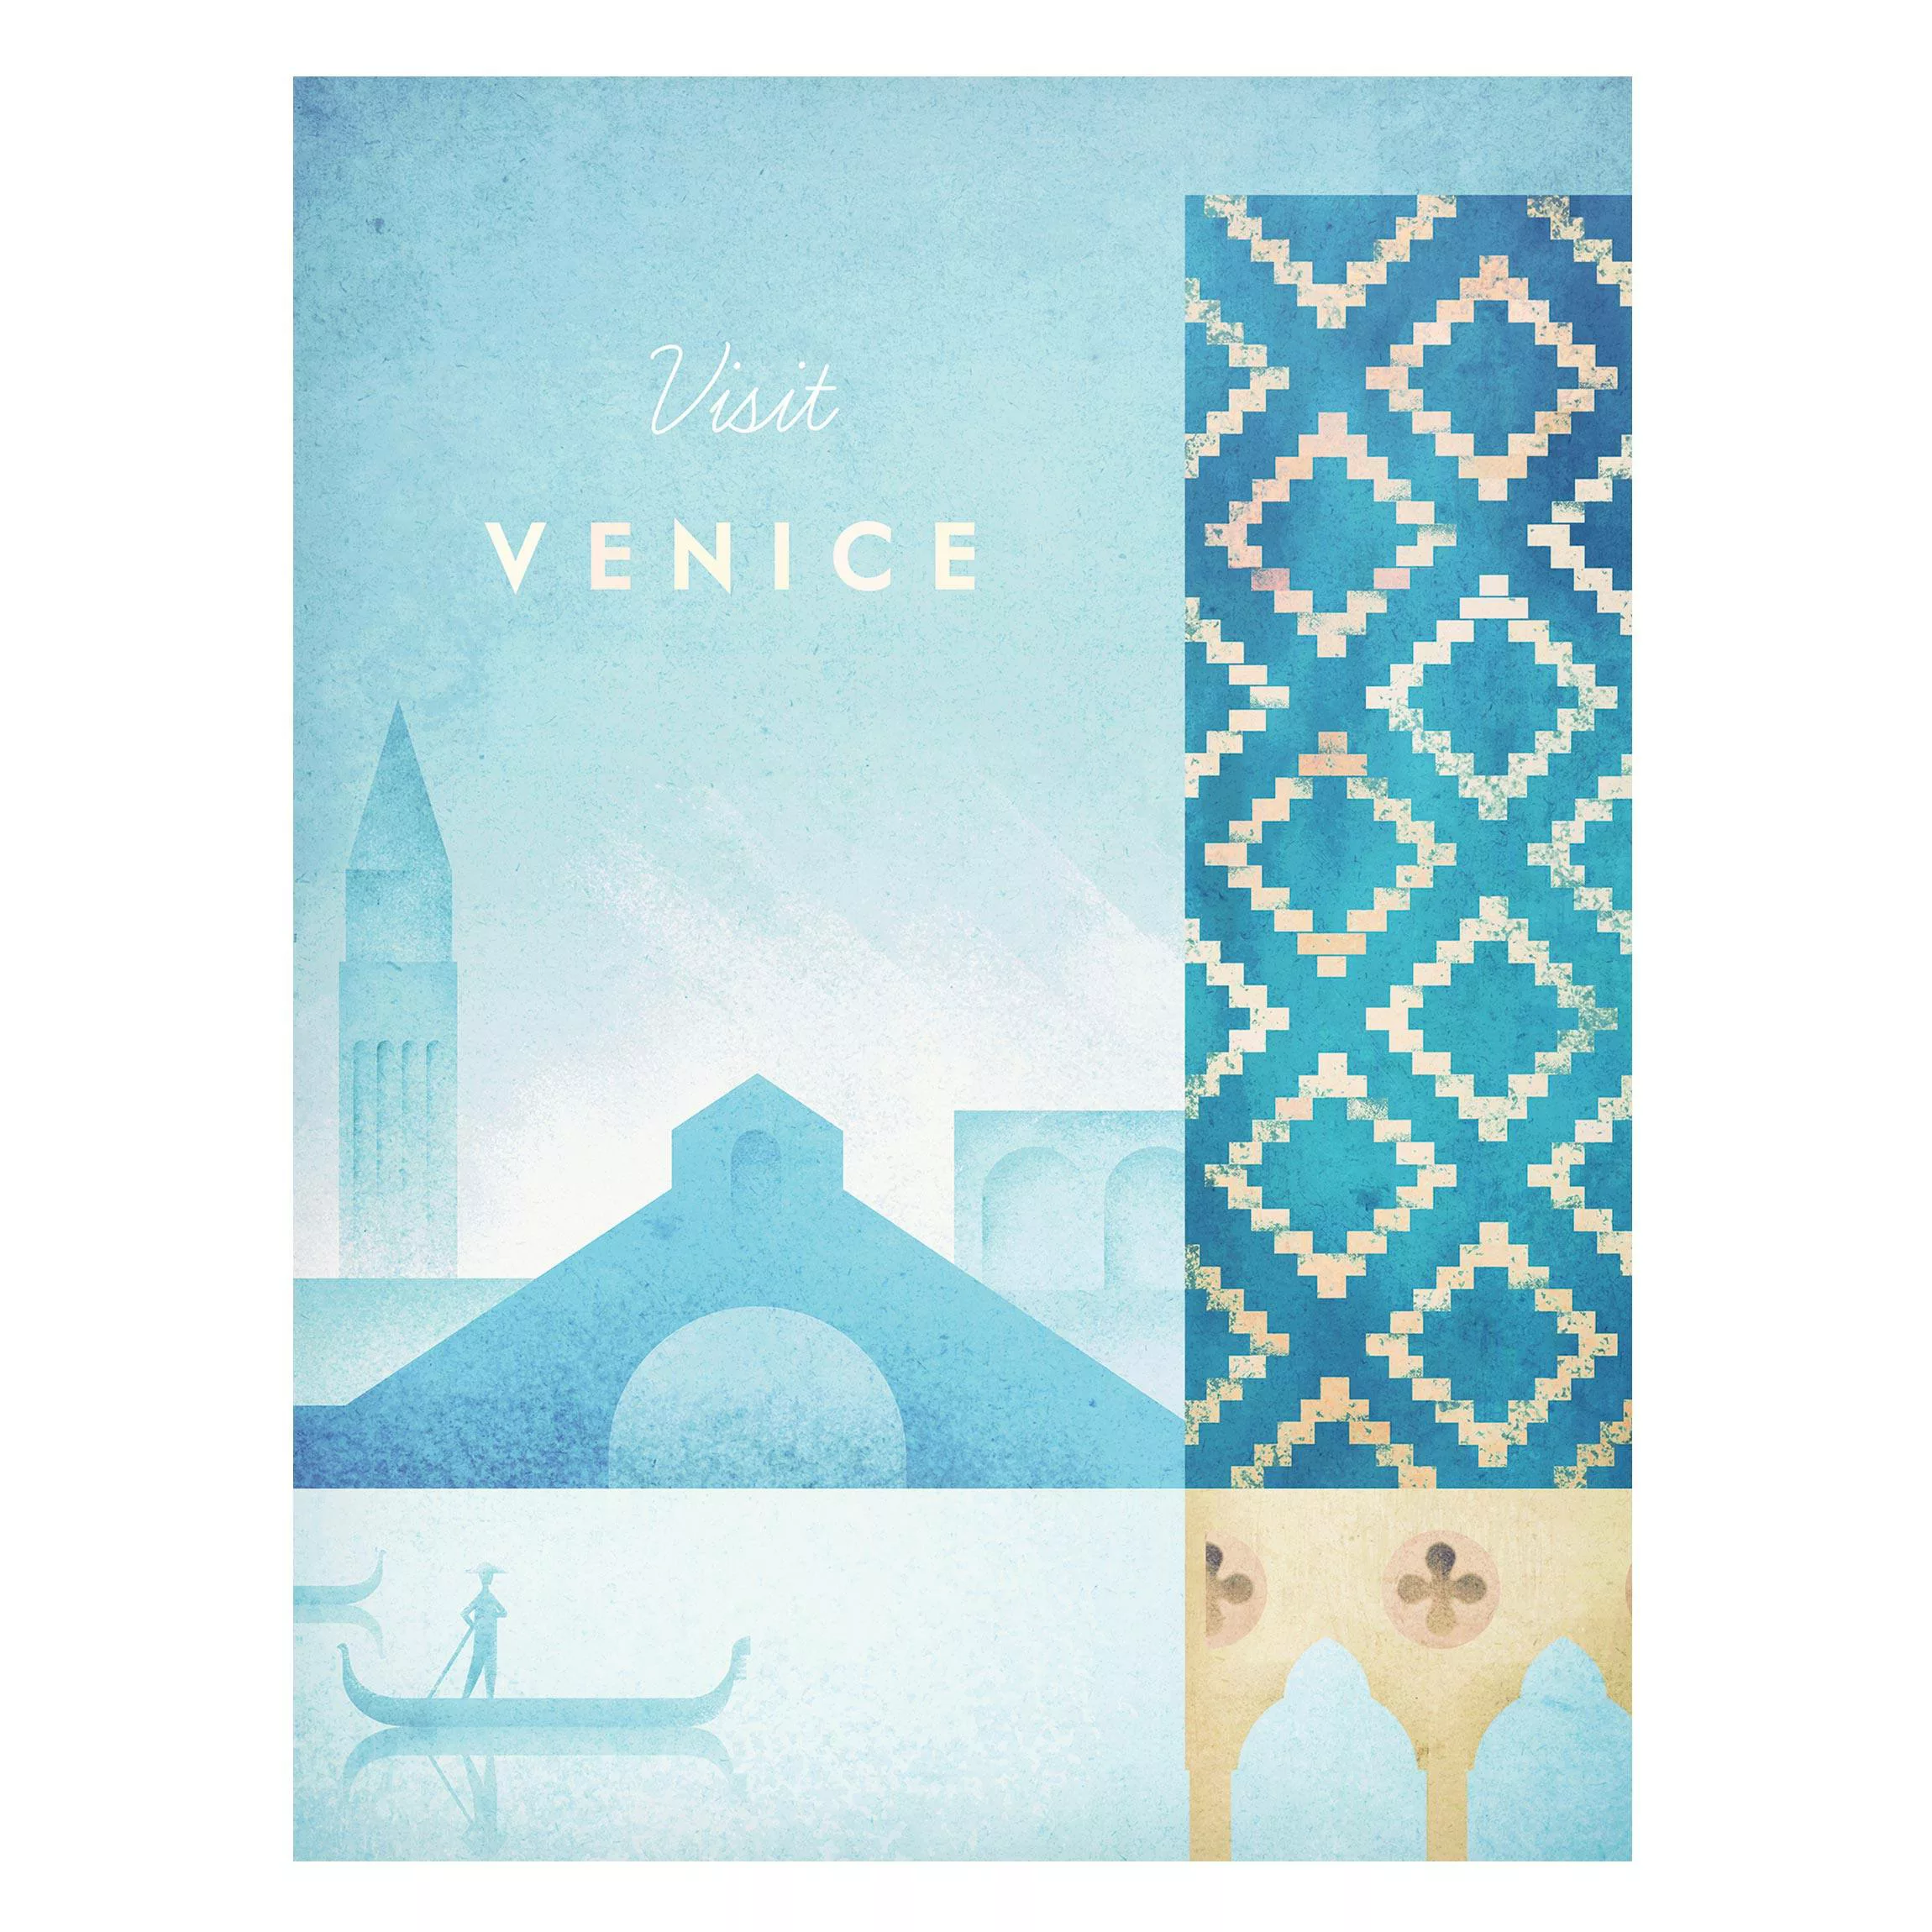 Magnettafel Architektur & Skyline - Hochformat 3:4 Reiseposter - Venedig günstig online kaufen